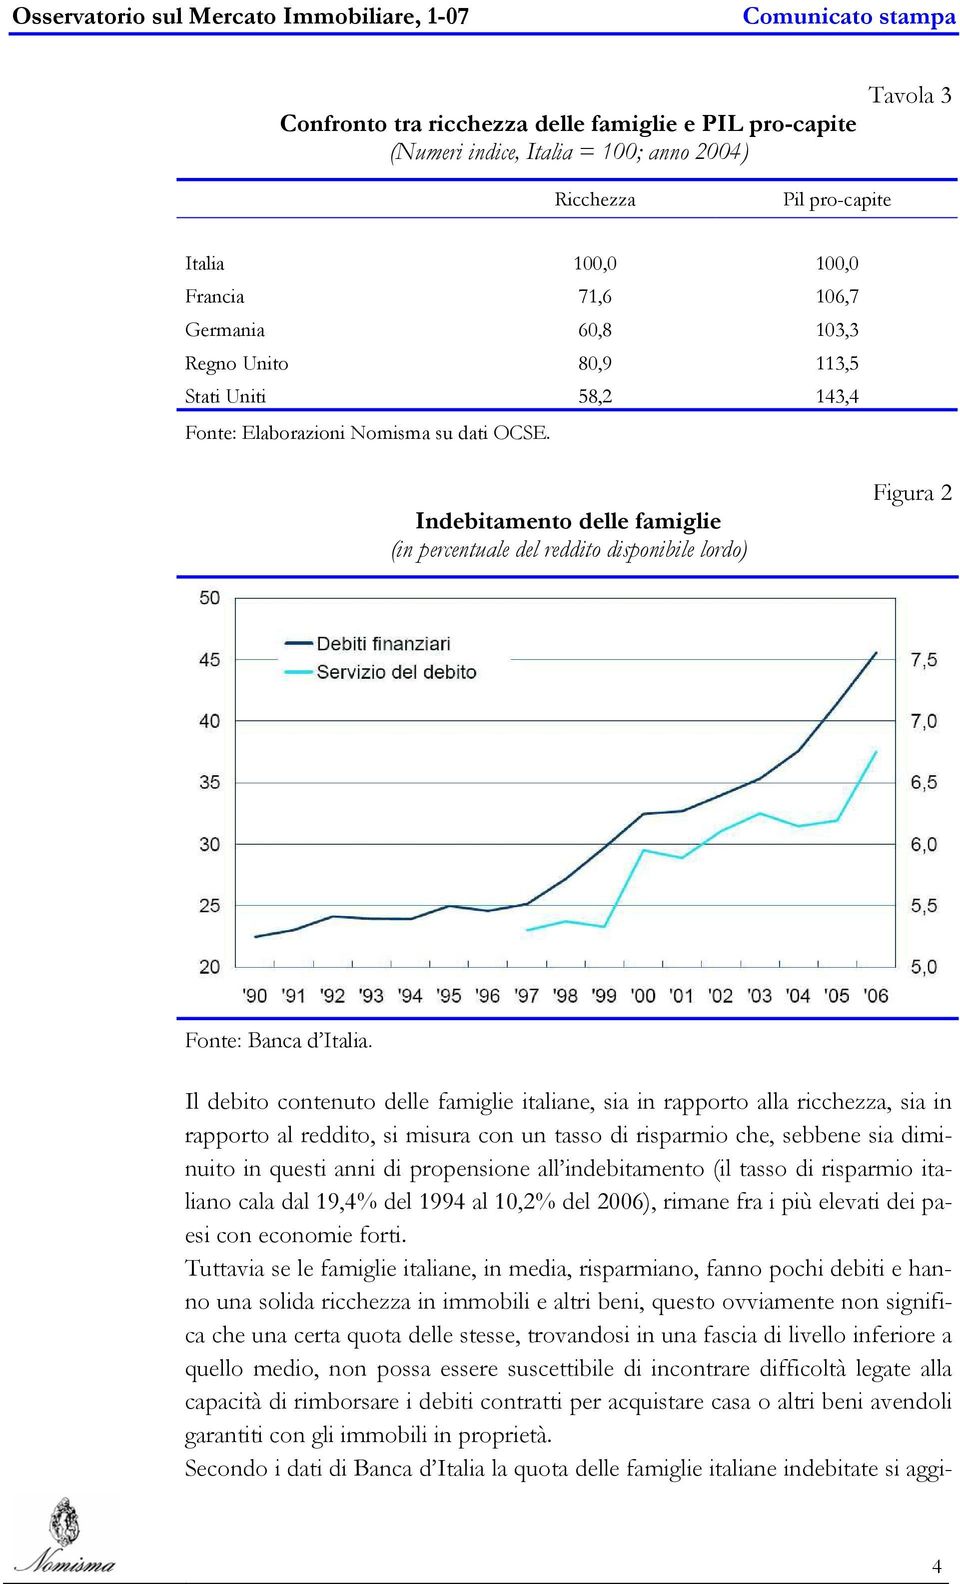 Il debito contenuto delle famiglie italiane, sia in rapporto alla ricchezza, sia in rapporto al reddito, si misura con un tasso di risparmio che, sebbene sia diminuito in questi anni di propensione